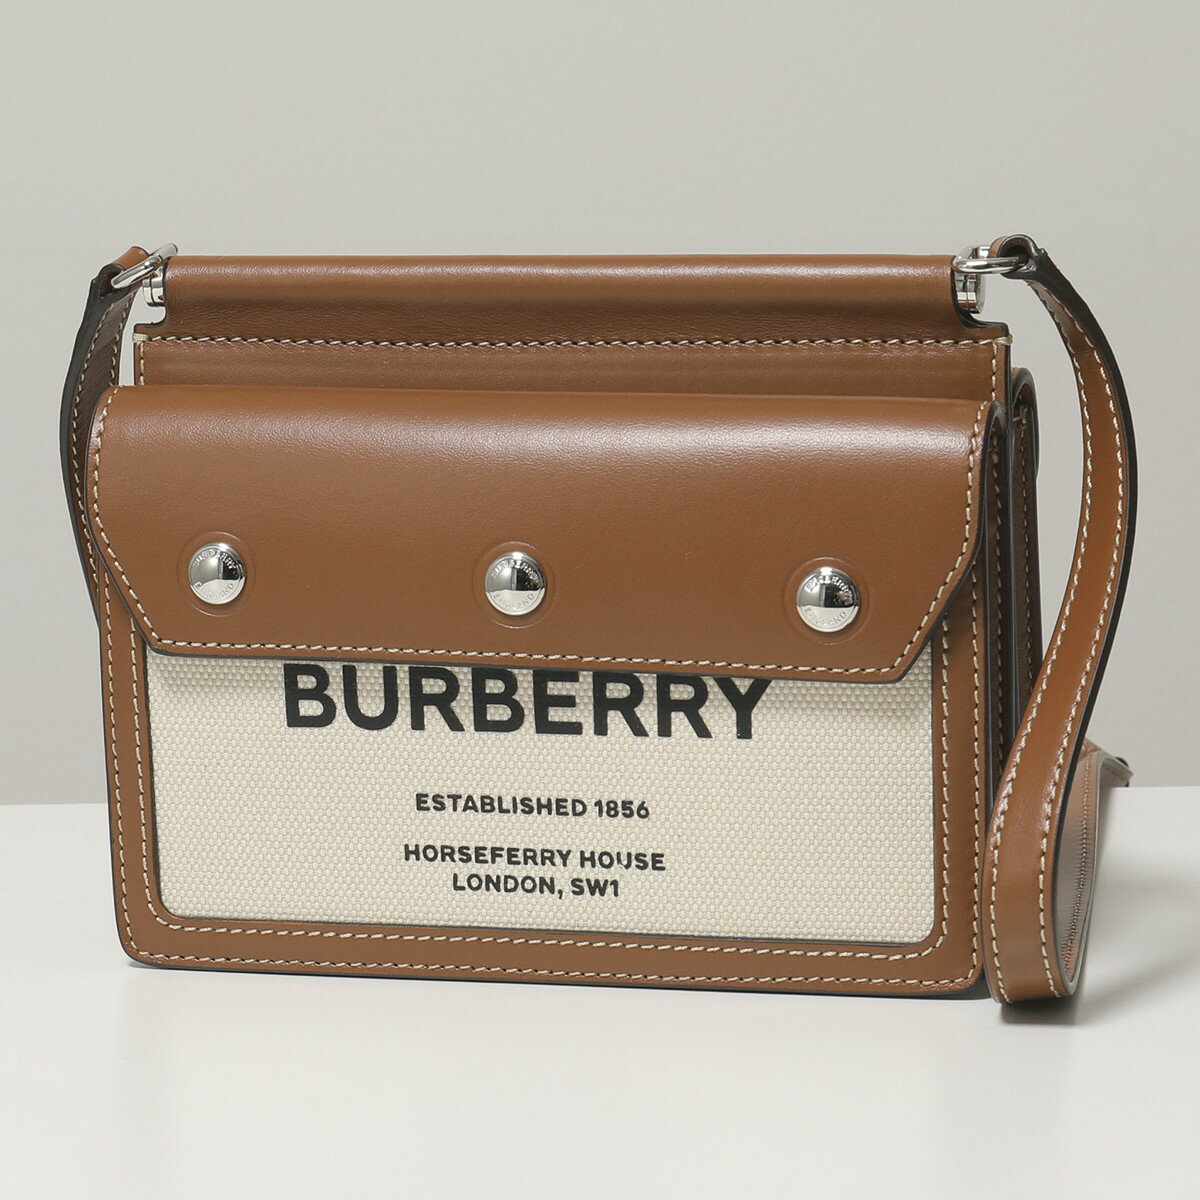 ベラ・ハディッド@Burberry The Pocket Bag キャンペーン2020 | ハリウッドセレブ通信～2